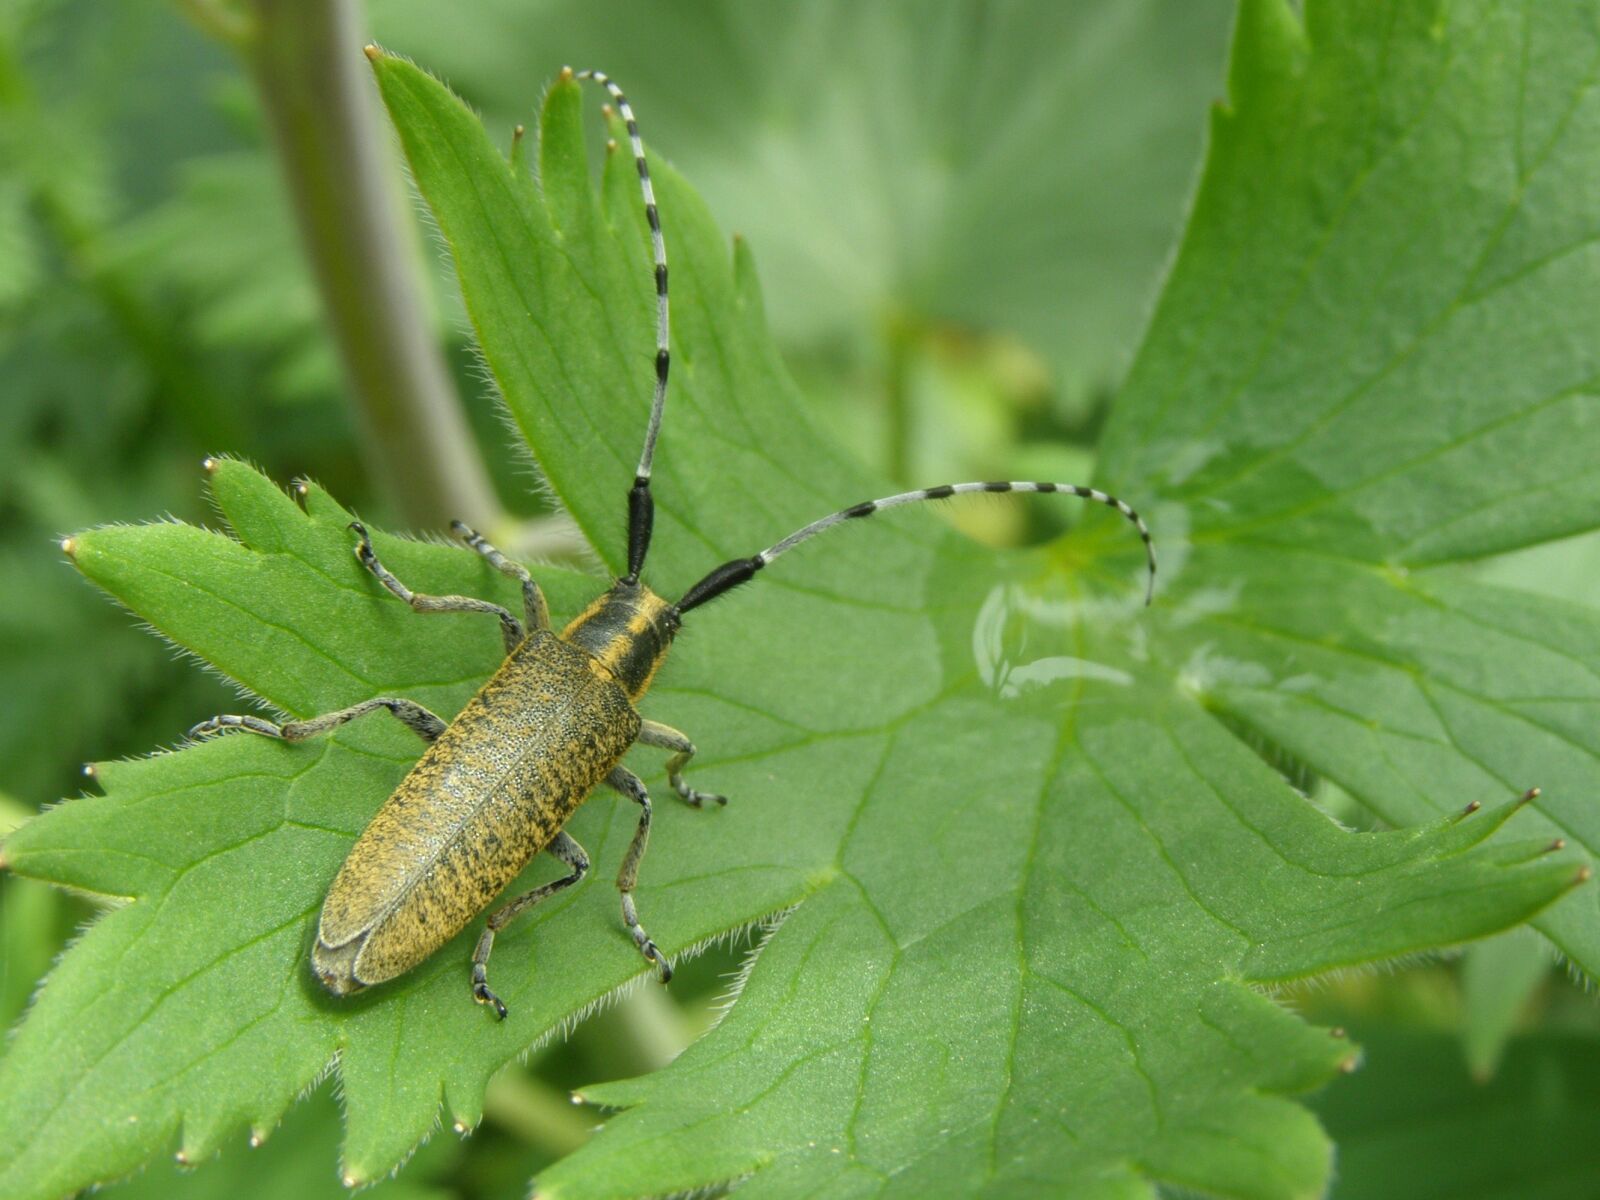 Olympus SP510UZ sample photo. Beetle, longhorn beetle, garden photography